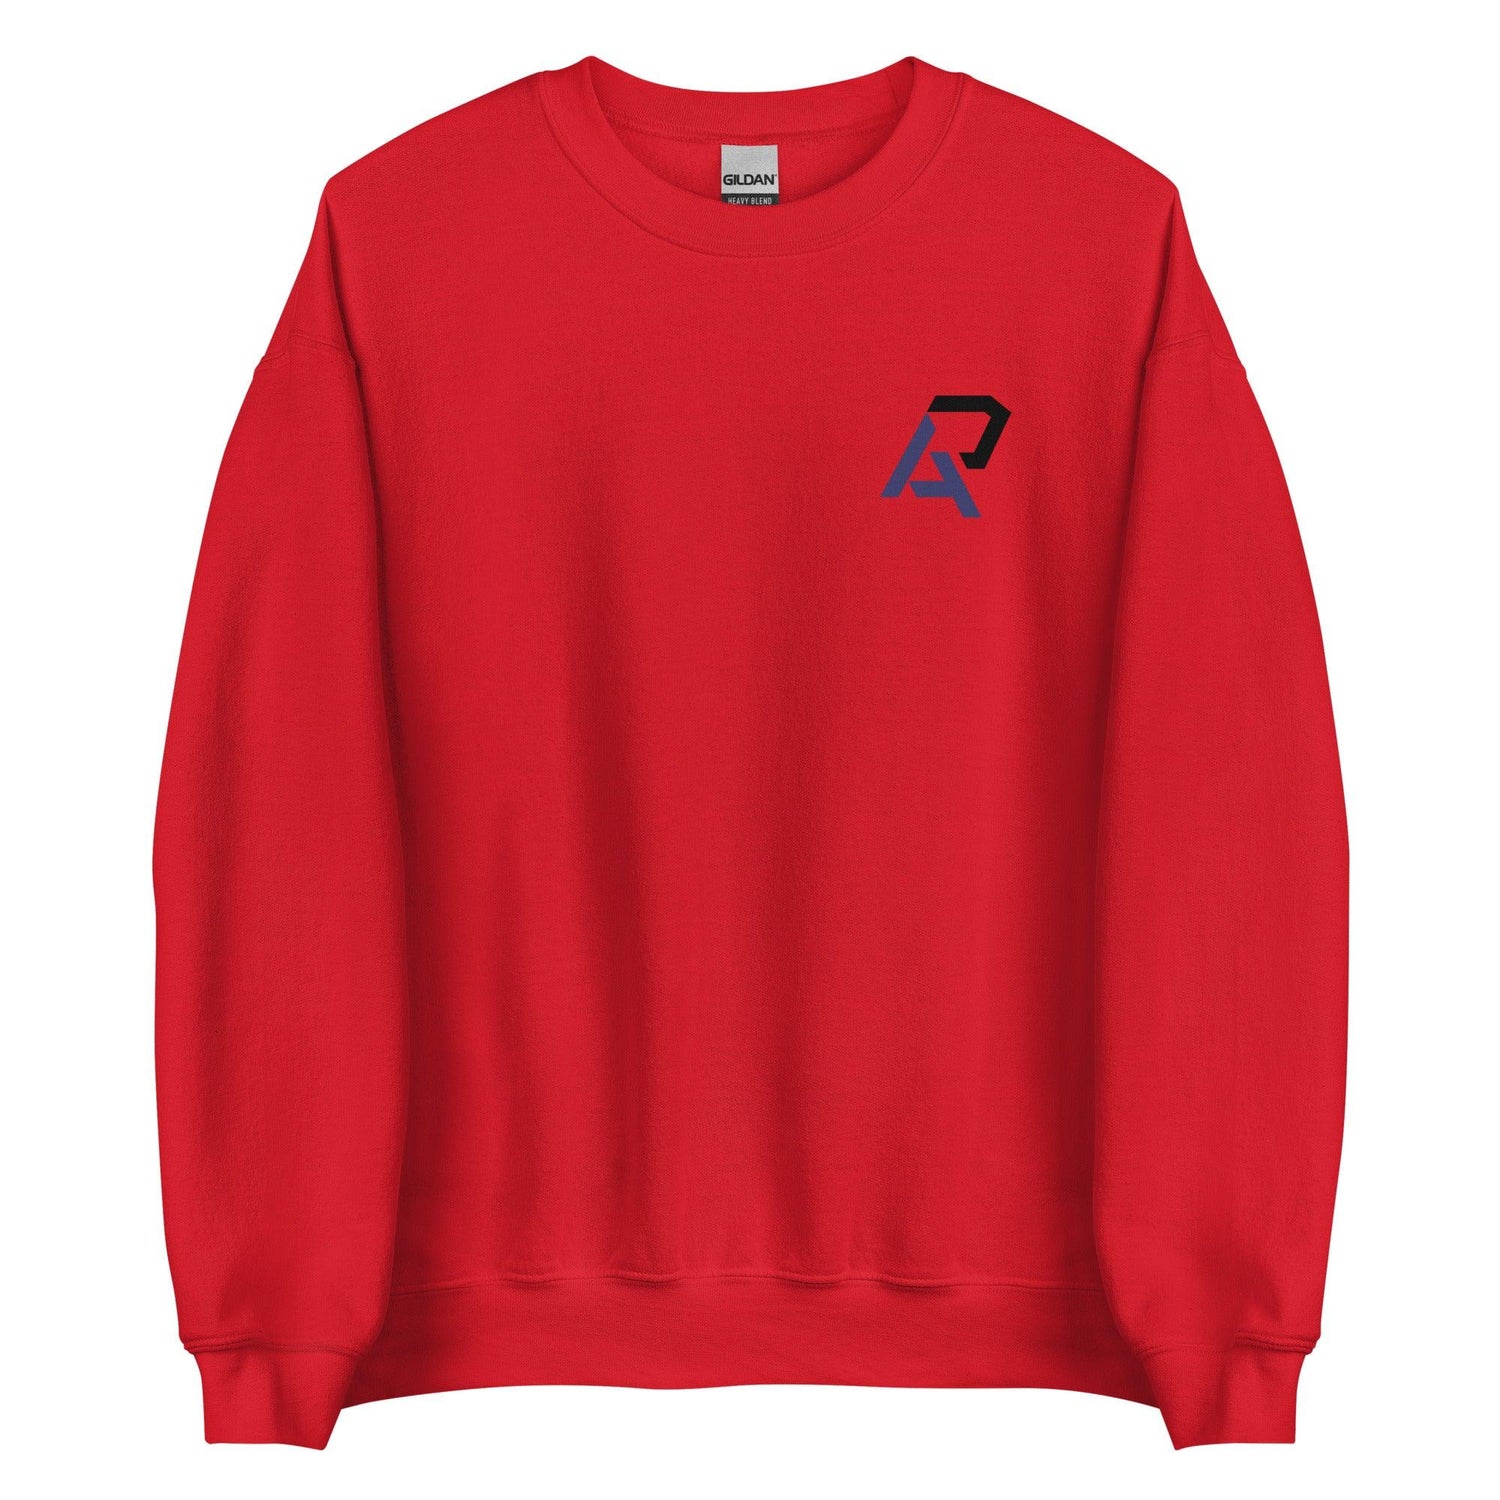 Alan Perdomo "Essential" Sweatshirt - Fan Arch